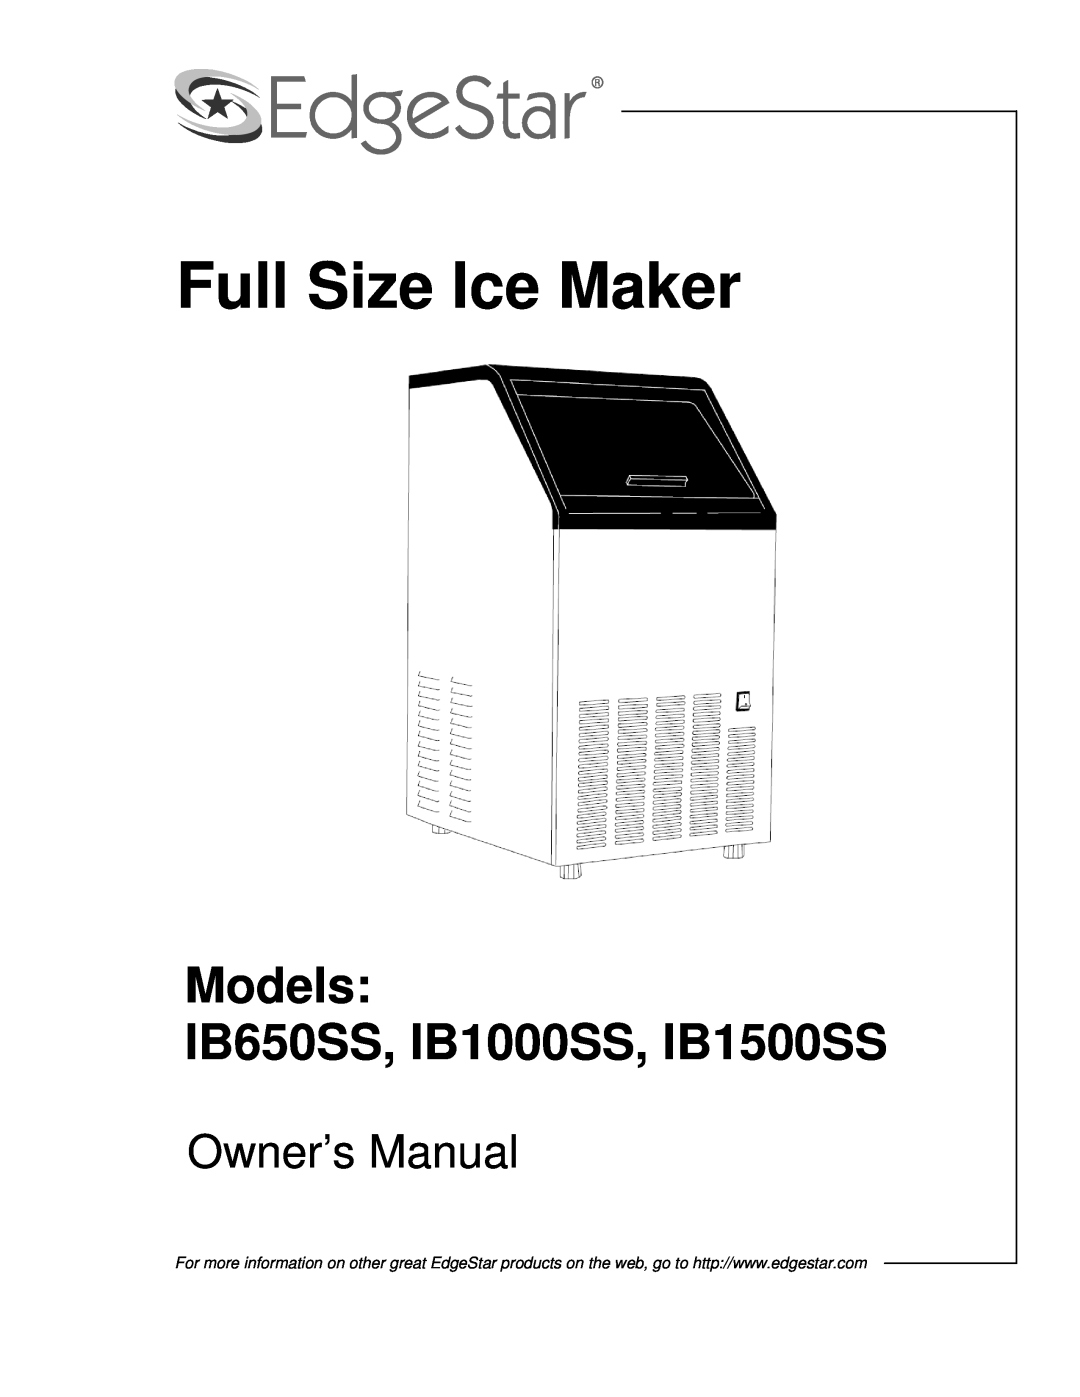 EdgeStar owner manual Full Size Ice Maker, Models IB650SS, IB1000SS, IB1500SS, Owner’s Manual 